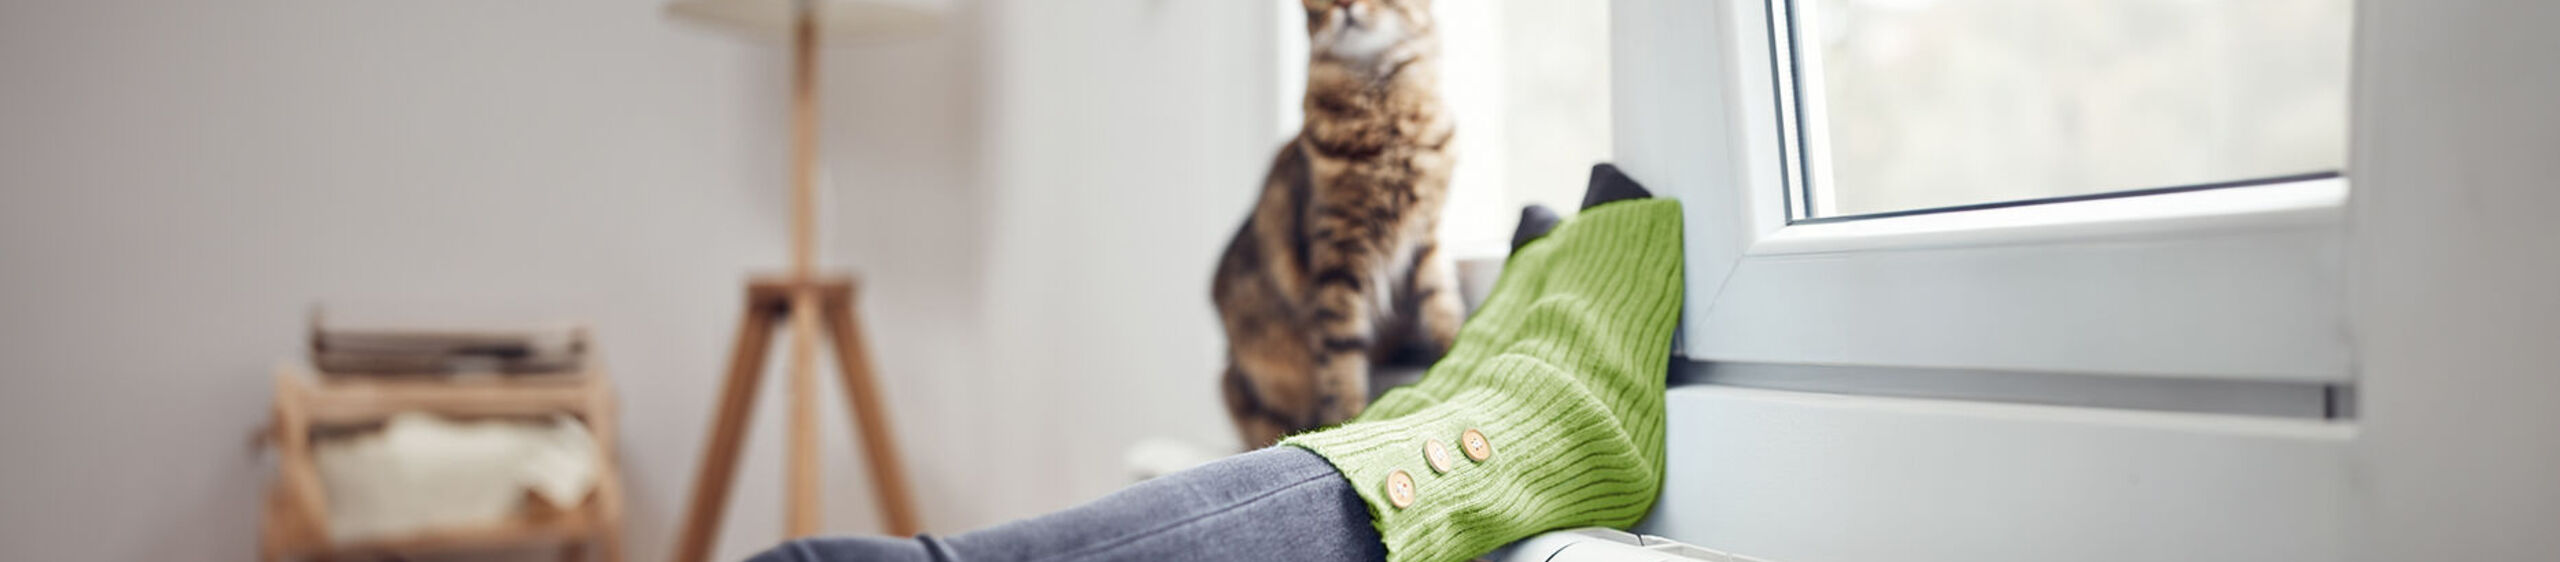 Füße mit grünen Socken liegen auf einer Heizung. Auf dieser sitzt eine Katze.